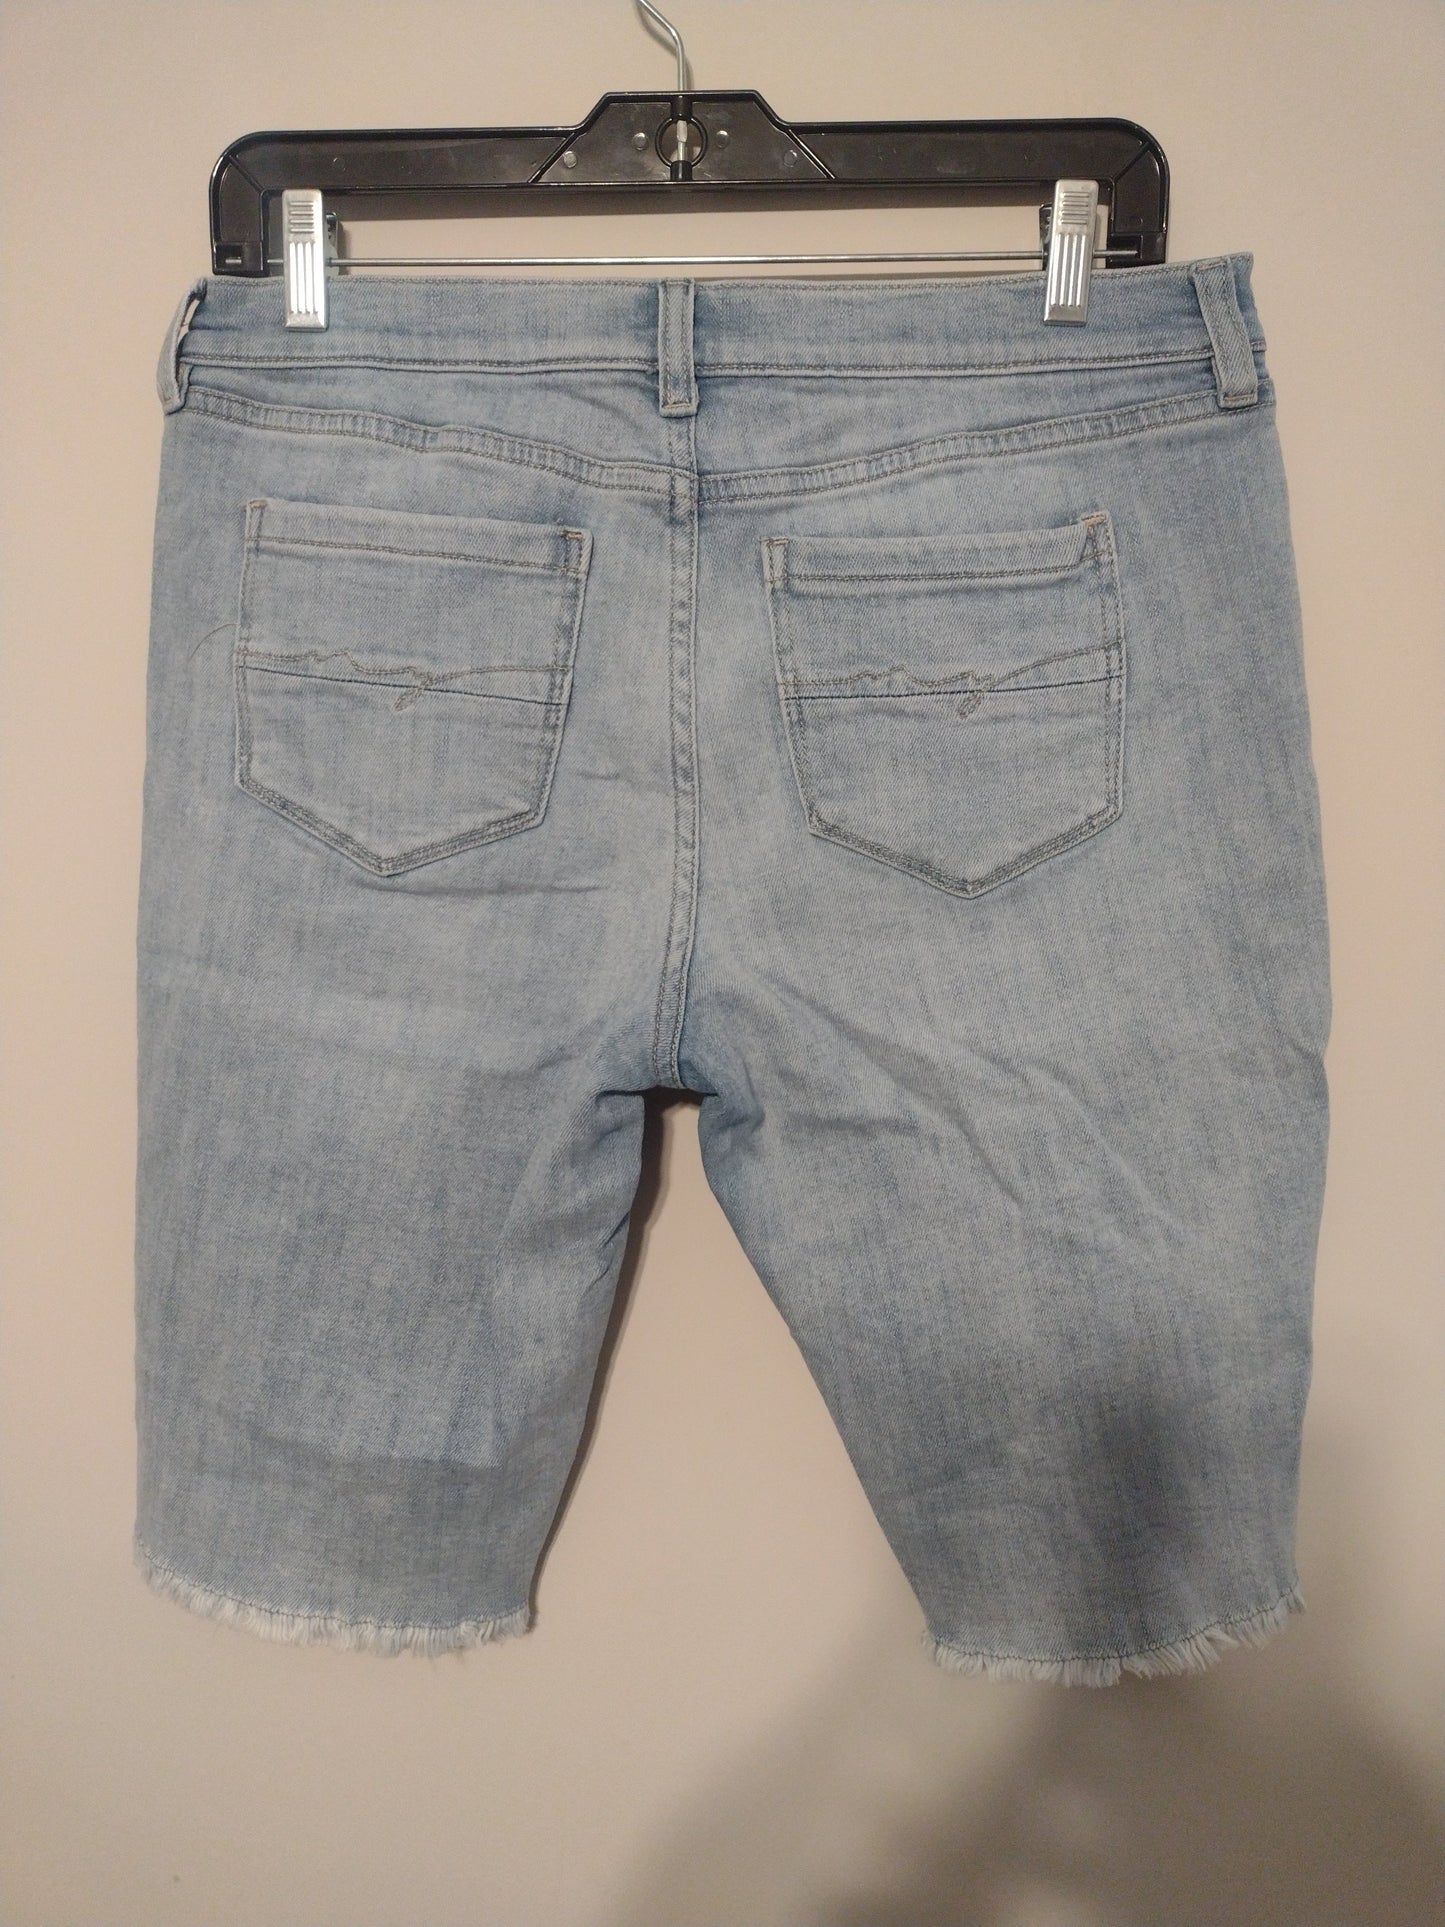 Shorts By Soho Design Group  Size: 4